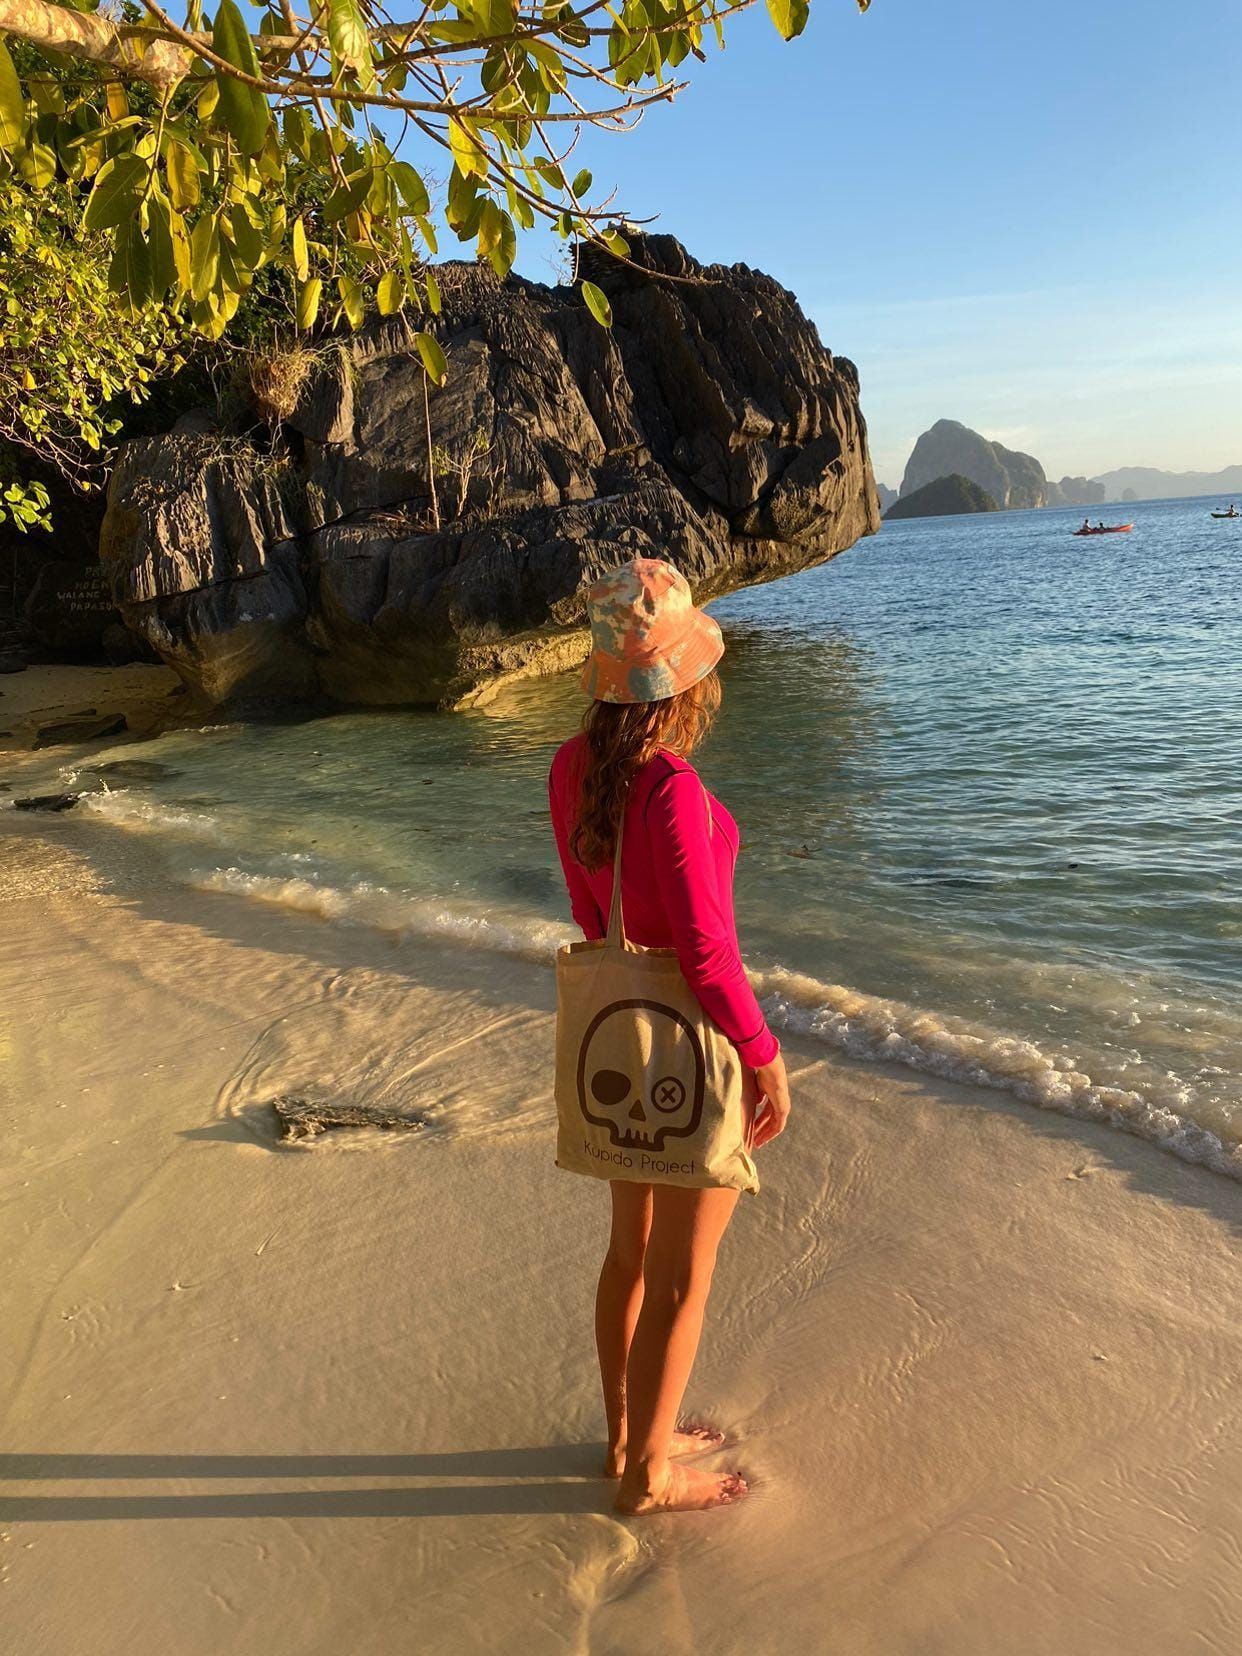 Una mujer está parada en una playa sosteniendo un bolso con una calavera.